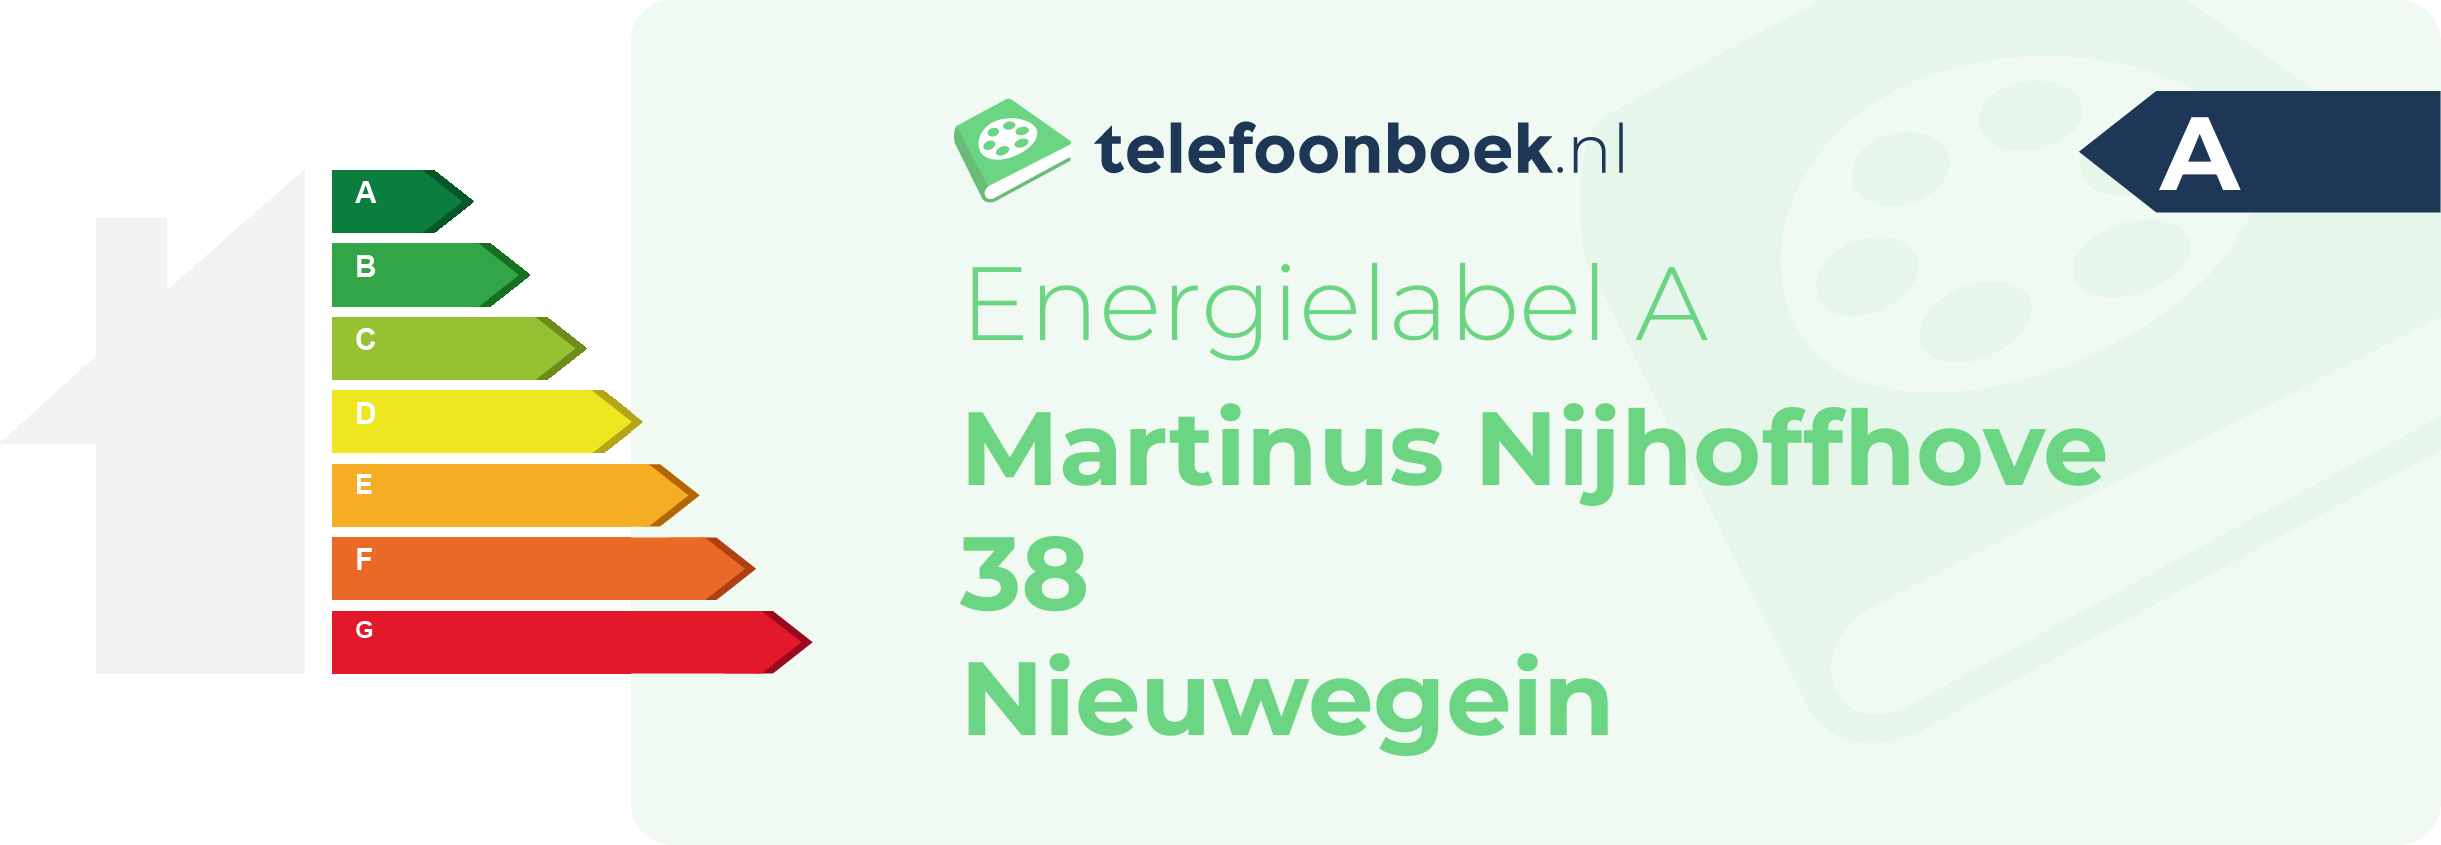 Energielabel Martinus Nijhoffhove 38 Nieuwegein